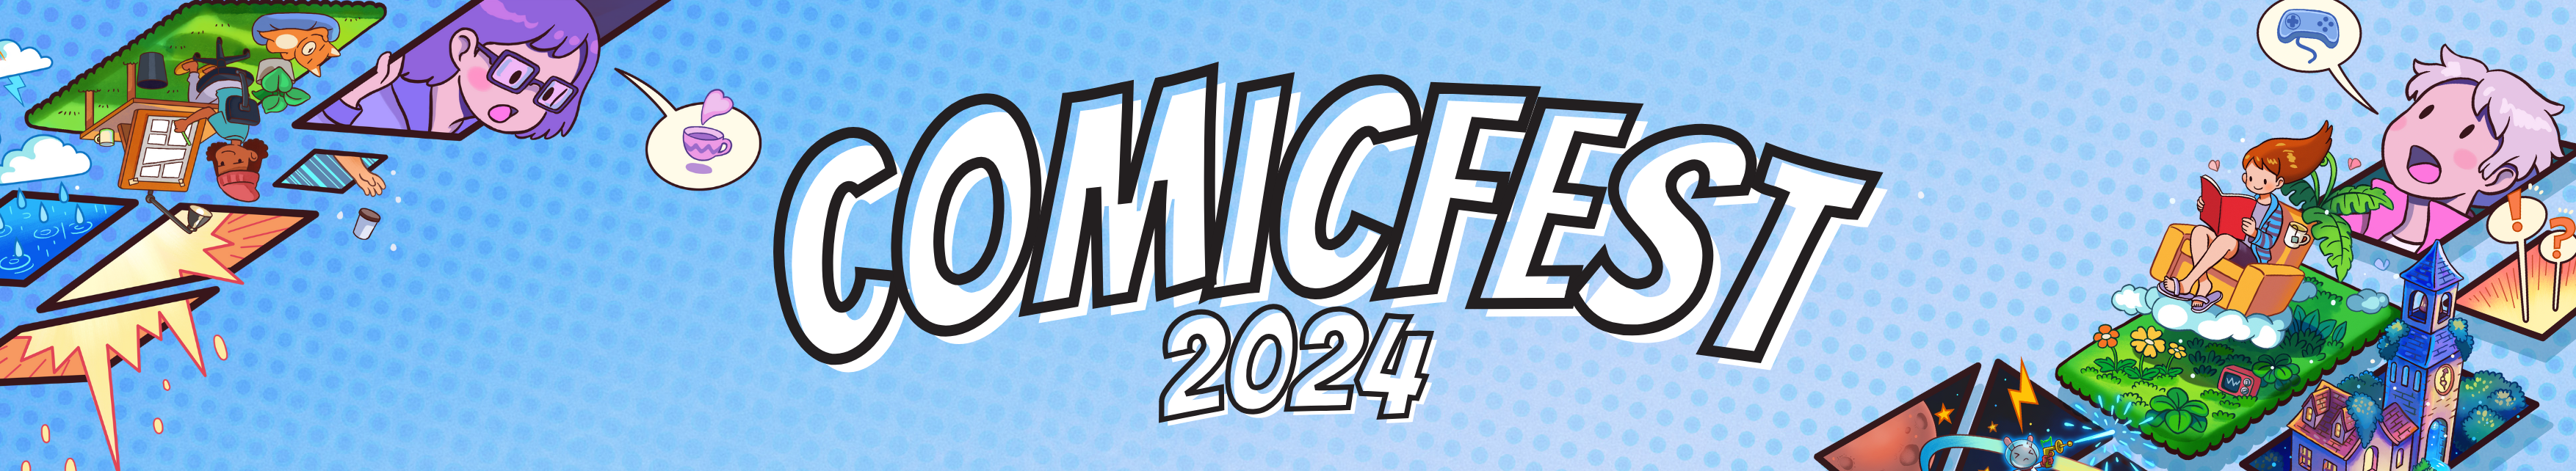 ComicFest 2024 website